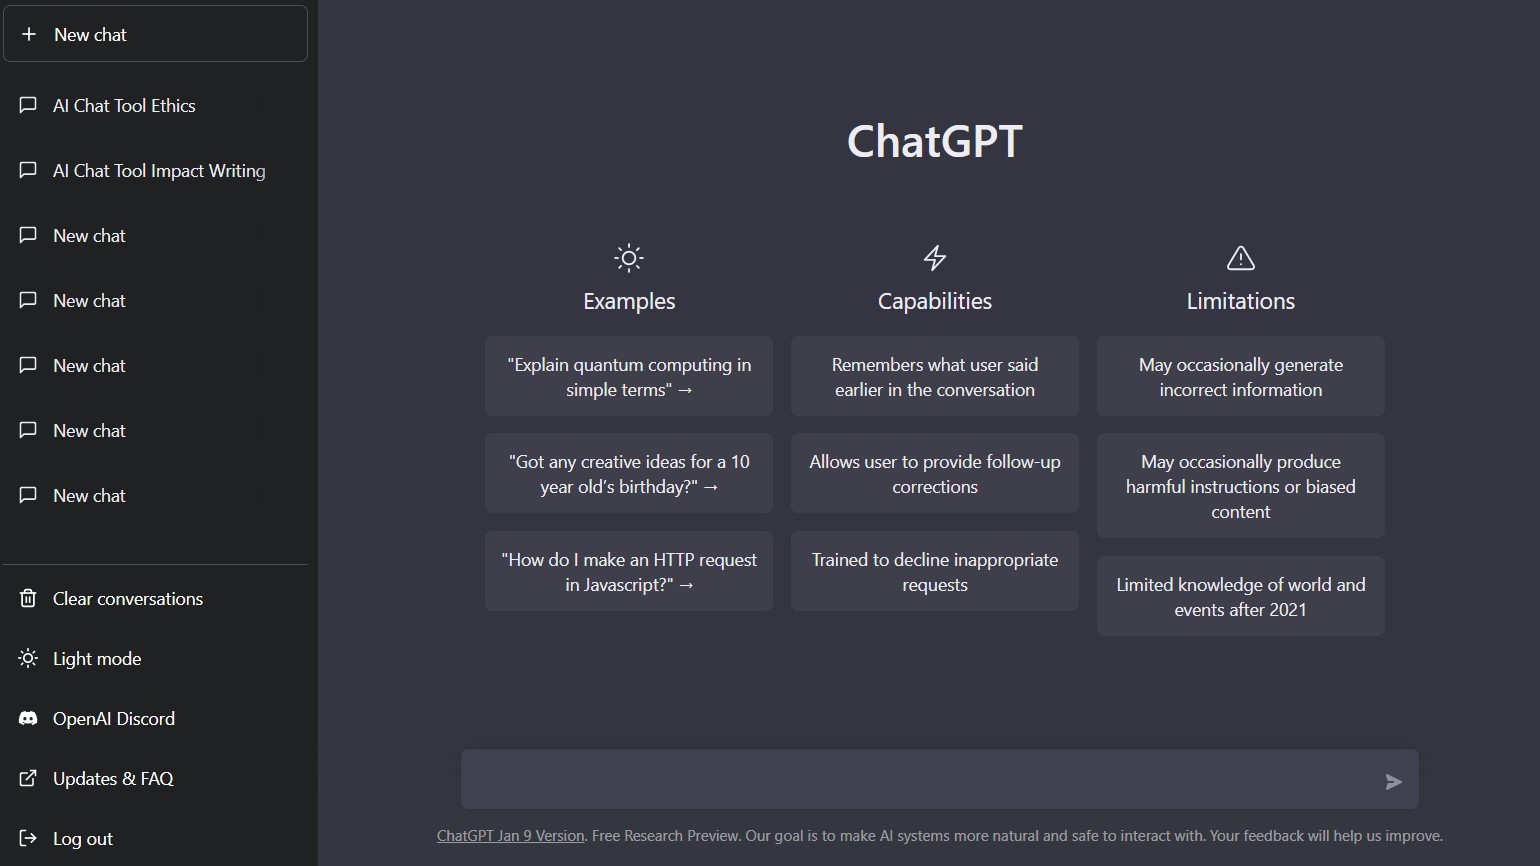 ChatGPT (Chat Generative Pre-trained Transformer), OpenAI tarafından geliştirilen bir dil modelidir. Chat GPT, Transformer mimarisi kullanarak büyük bir veri kümesi üzerinde eğitilmiştir ve doğal dil işleme (NLP) alanındaki birçok görevi yerine getirebilir. Chat GPT, metin tabanlı bir girdi aldığında, ardından öğrendiği dil modeli kullanarak metnin devamını oluşturur.